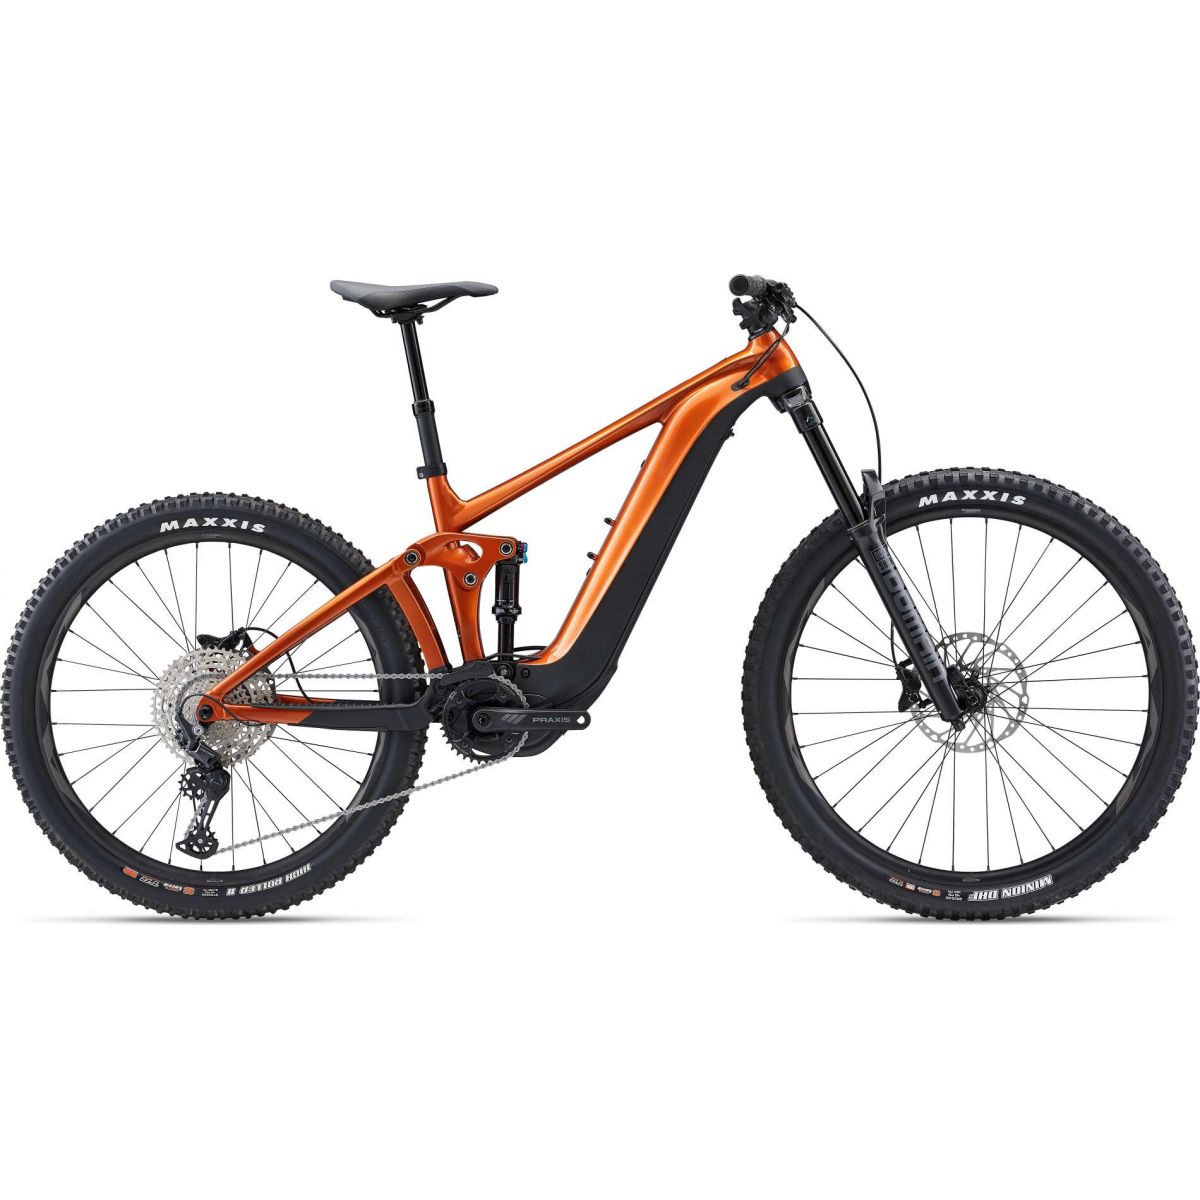 Bicicleta eléctrica de enduro Giant Reign E+ 3 MX PRO 625Wh 800WH 2022 color naranja - The Bike Village